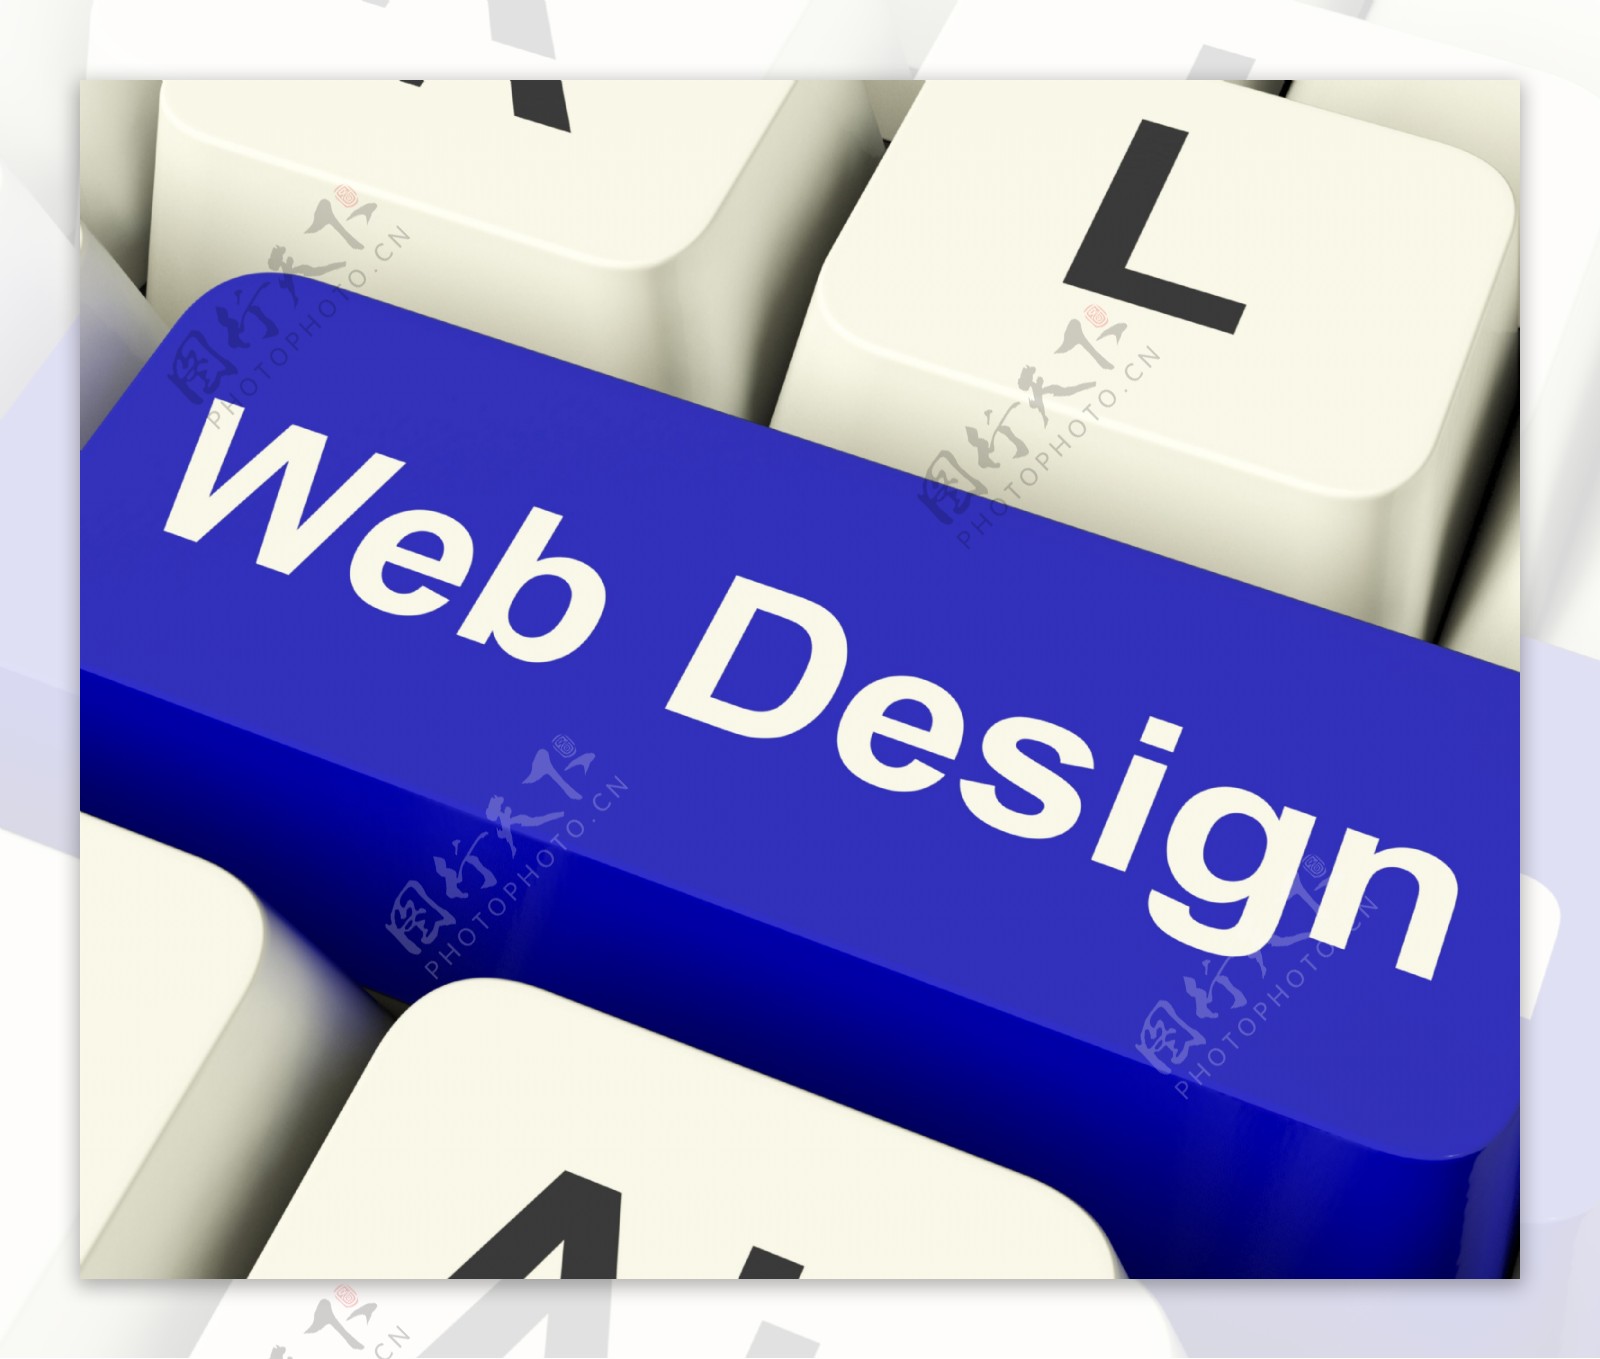 网页设计的电脑钥匙显示Internet或网络图形设计